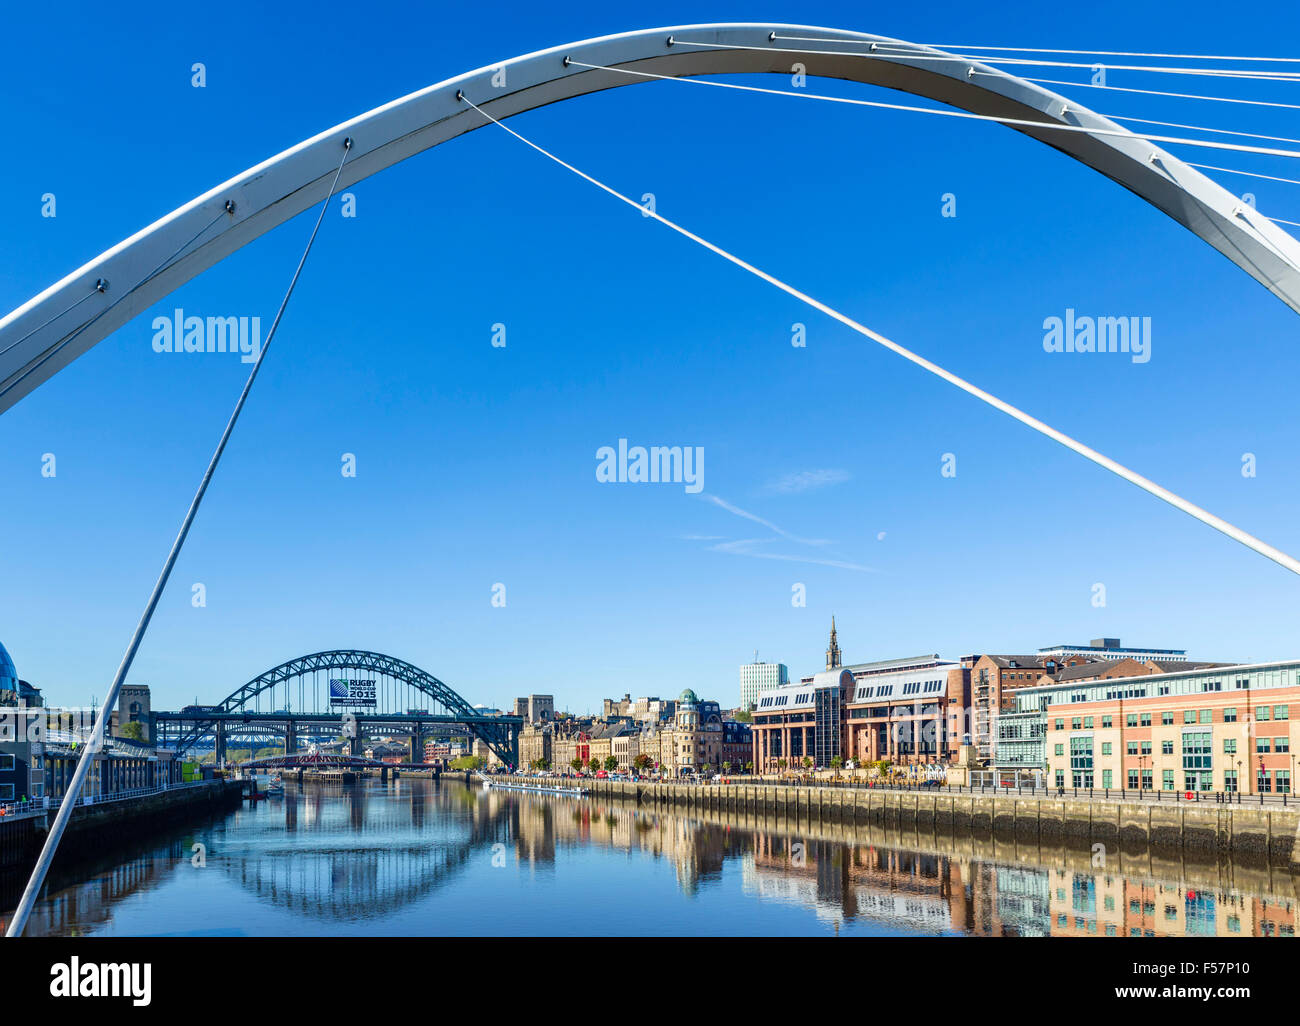 À la rivière Tyne vers Newcastle Quayside et de ponts Tyne Gateshead Millennium Bridge, à Newcastle, Tyne and Wear, Royaume-Uni Banque D'Images